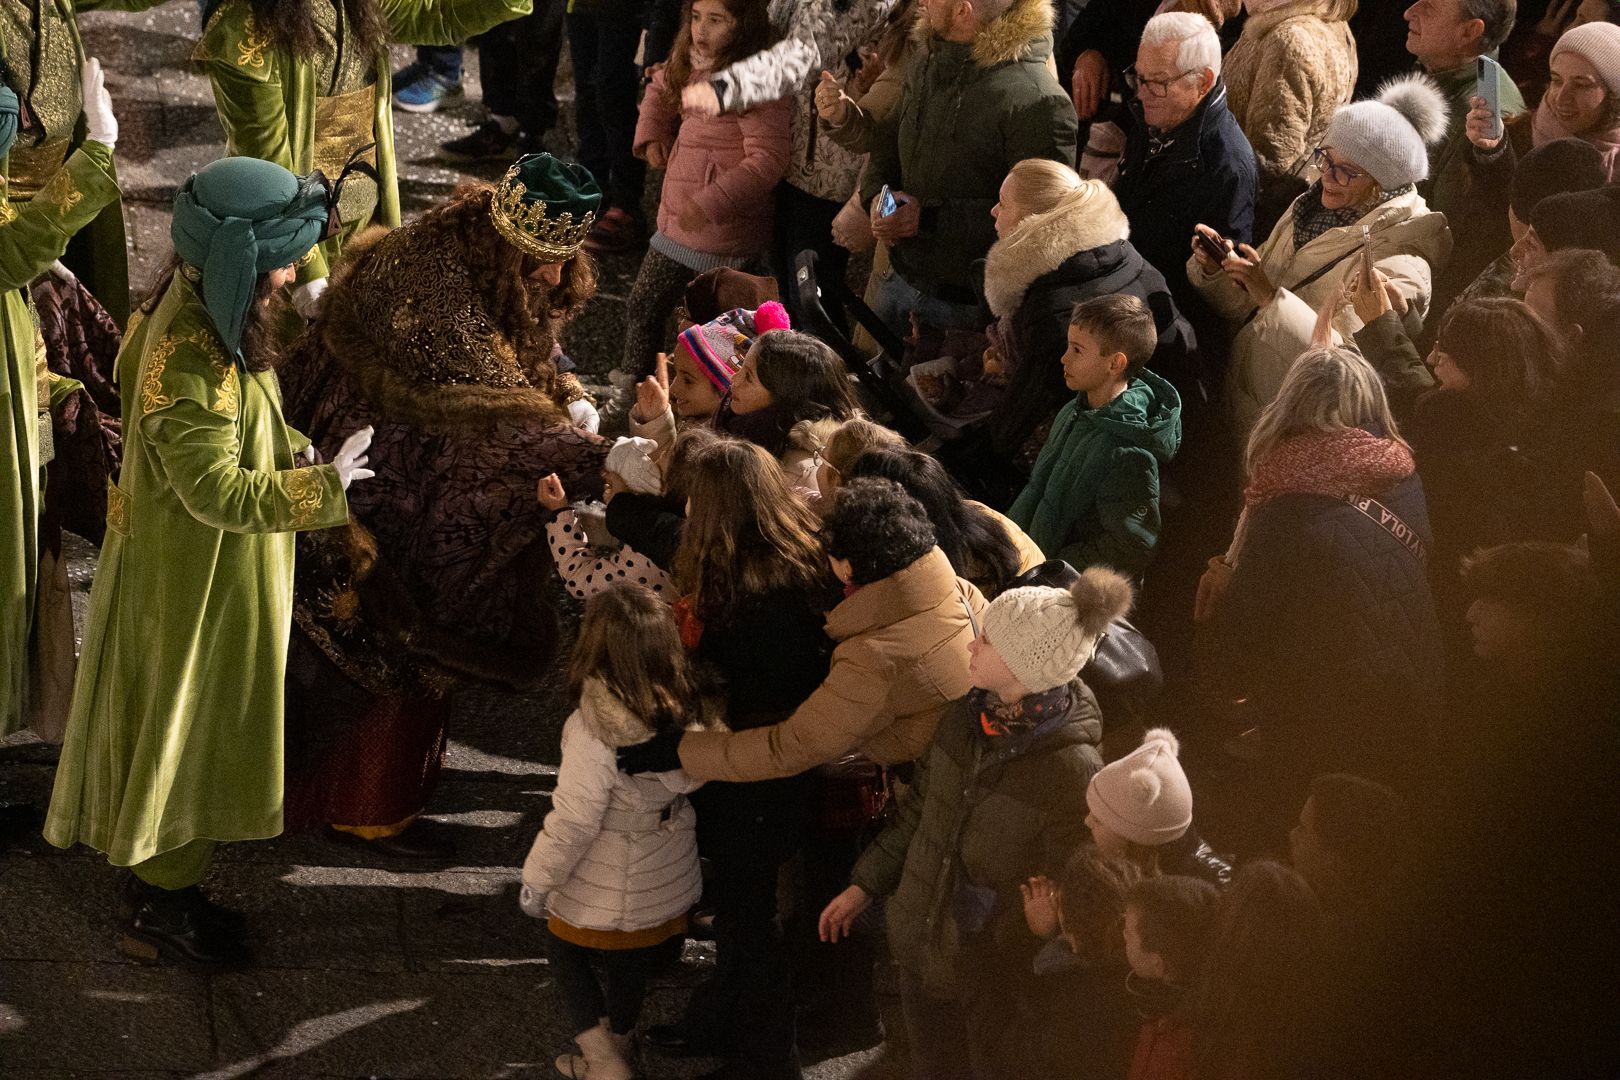 GALERÍA | Las mejores imágenes de la cabalgata de Reyes en Zamora